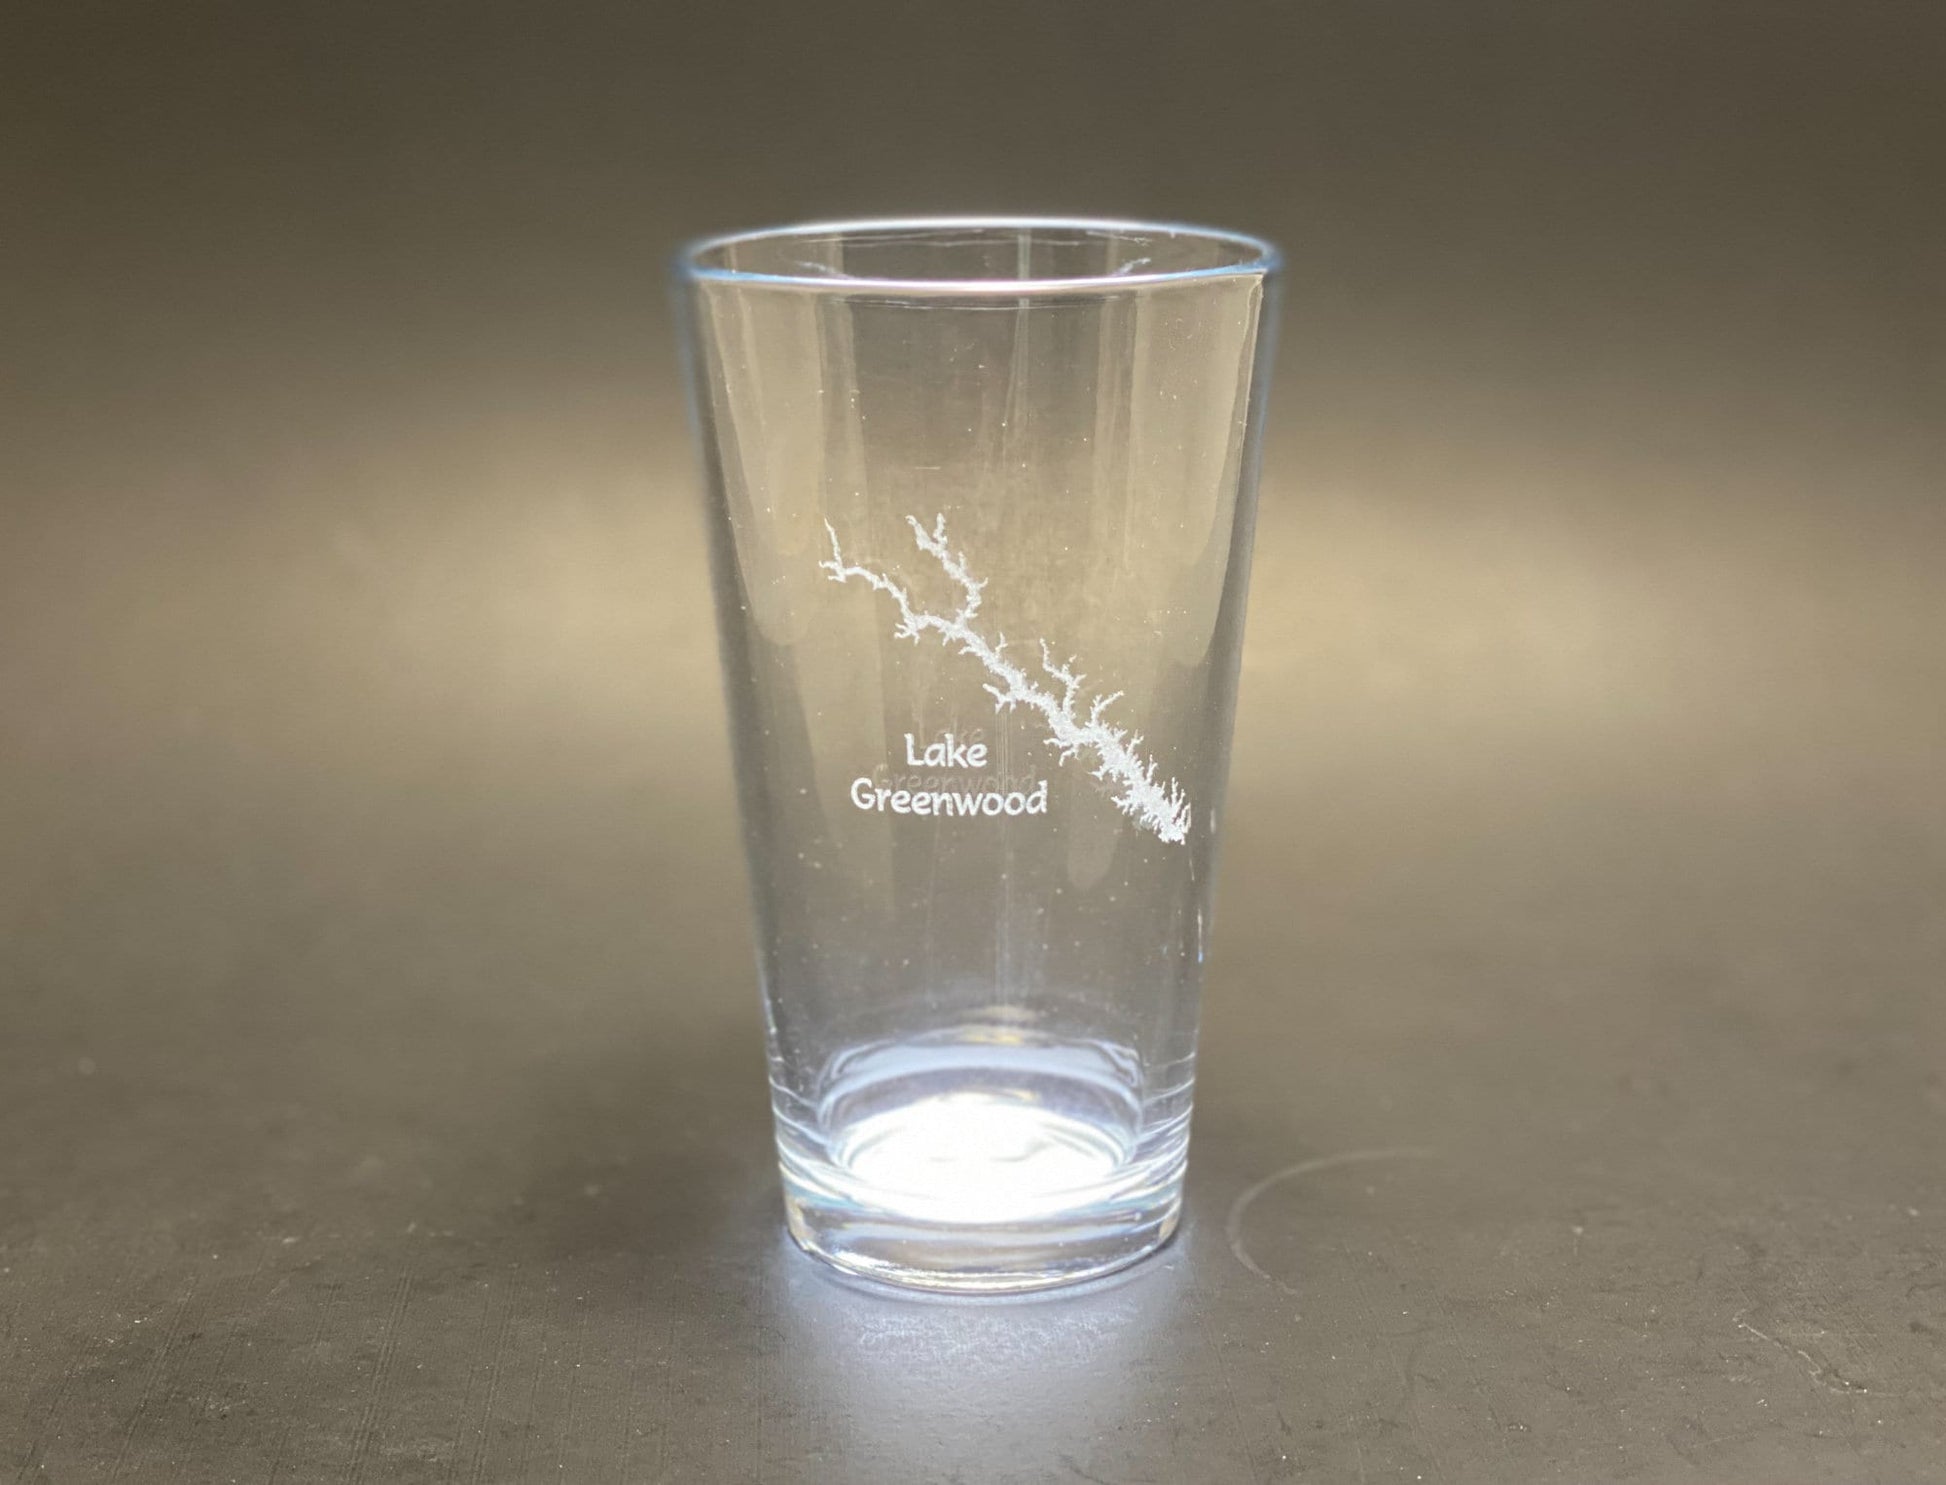 Lake Greenwood South Carolina - Laser engraved pint glass